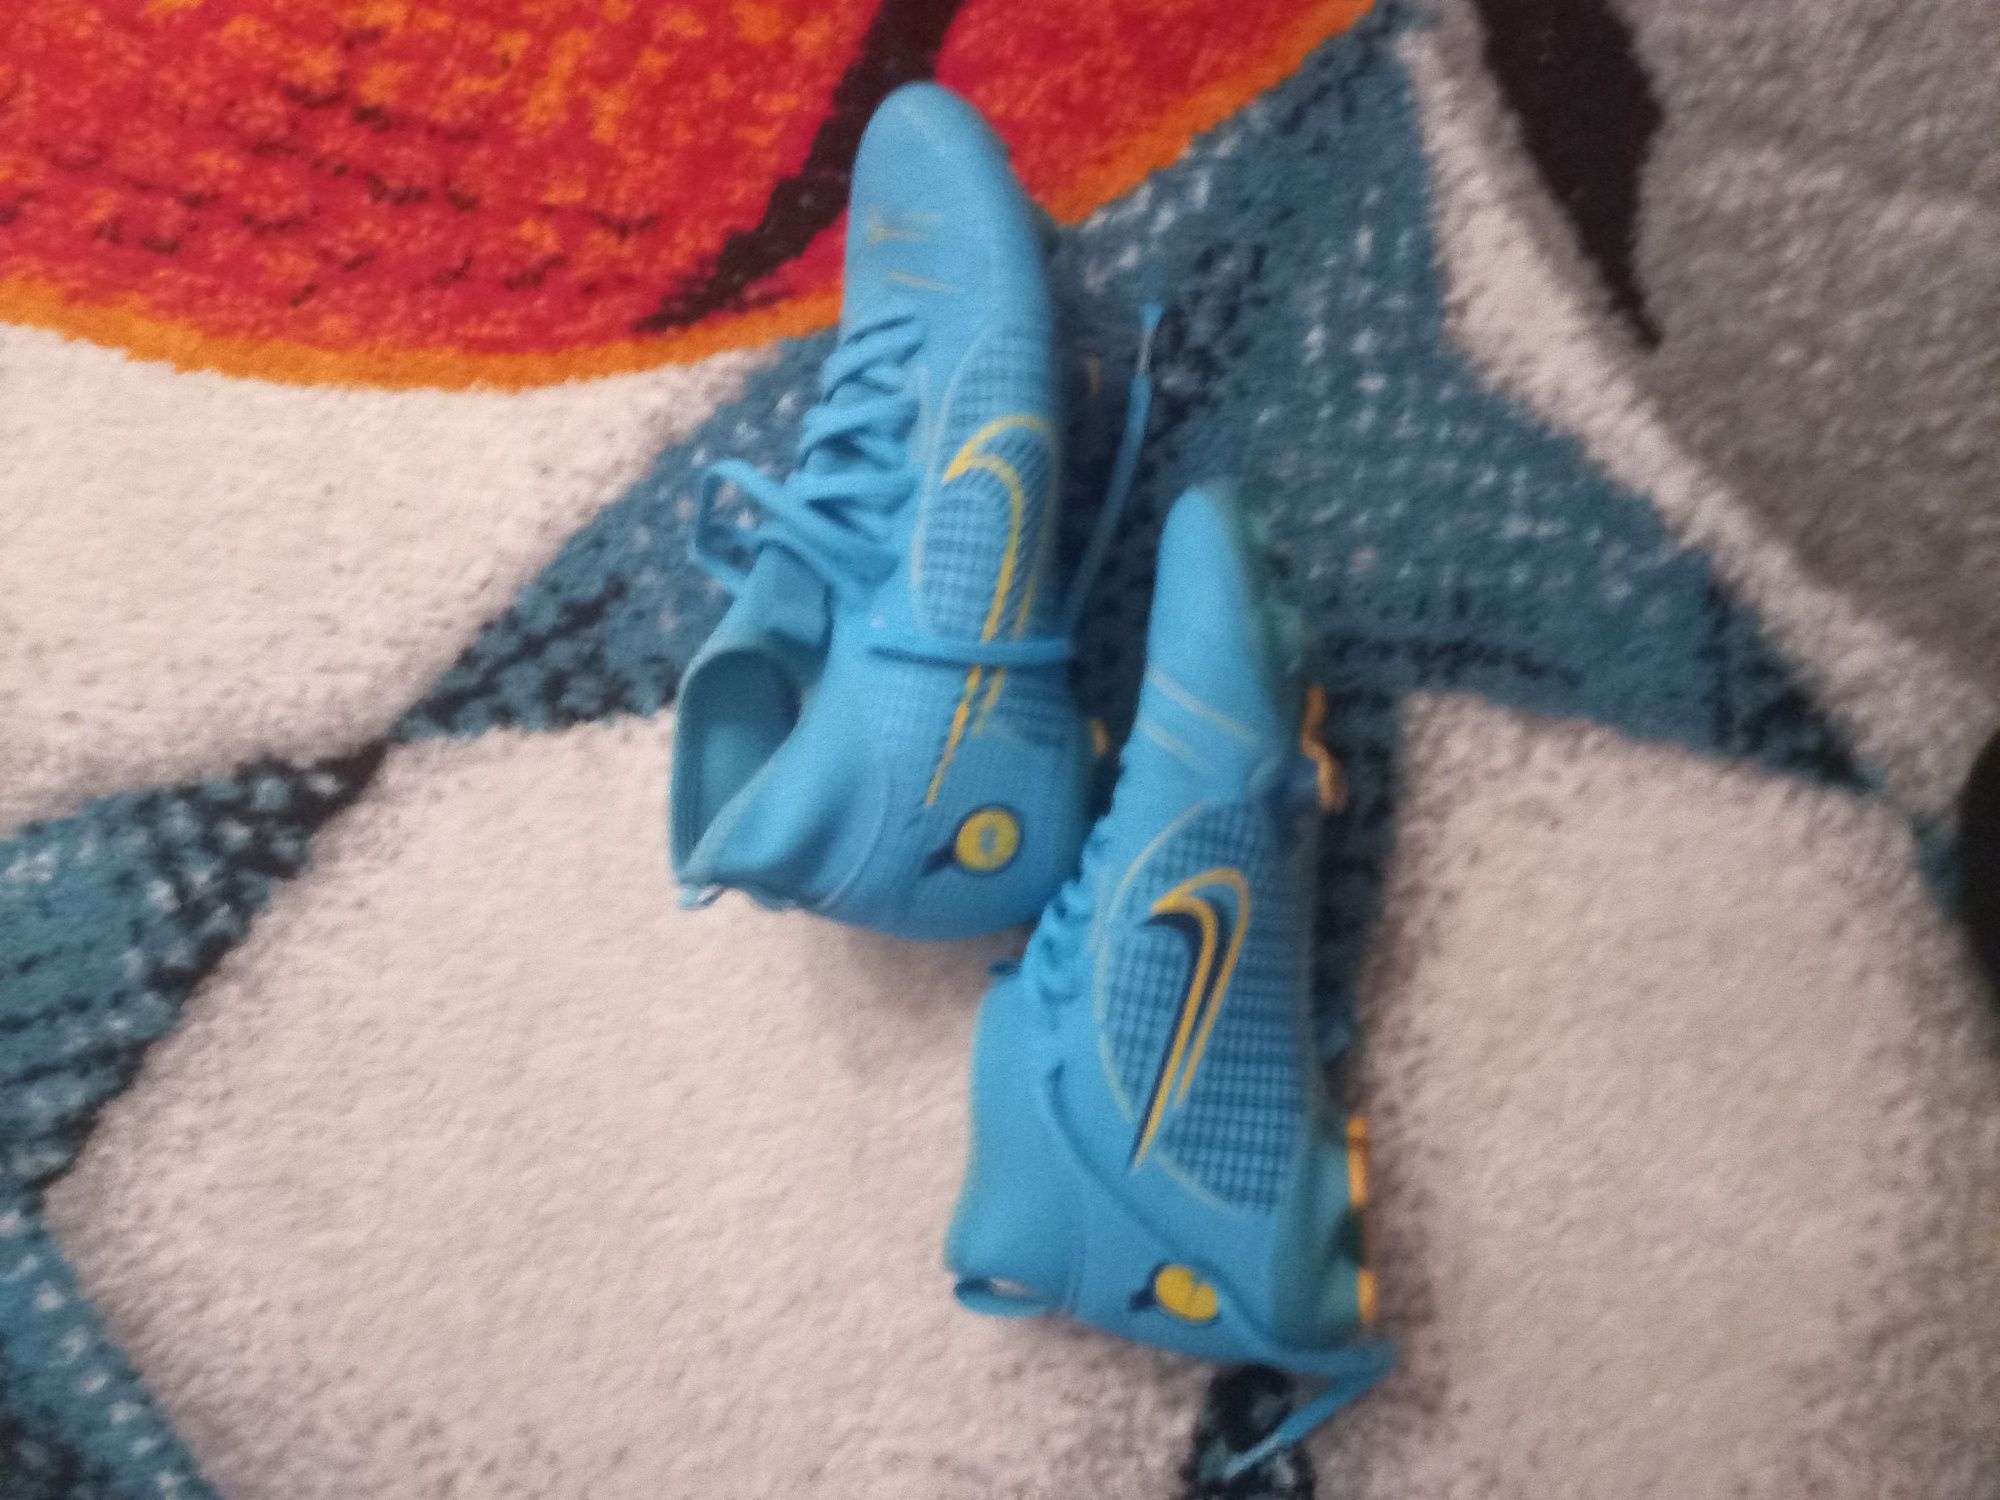 Vănd ghete Nike Mercurial culoare albastră turcoaz mărimea 32